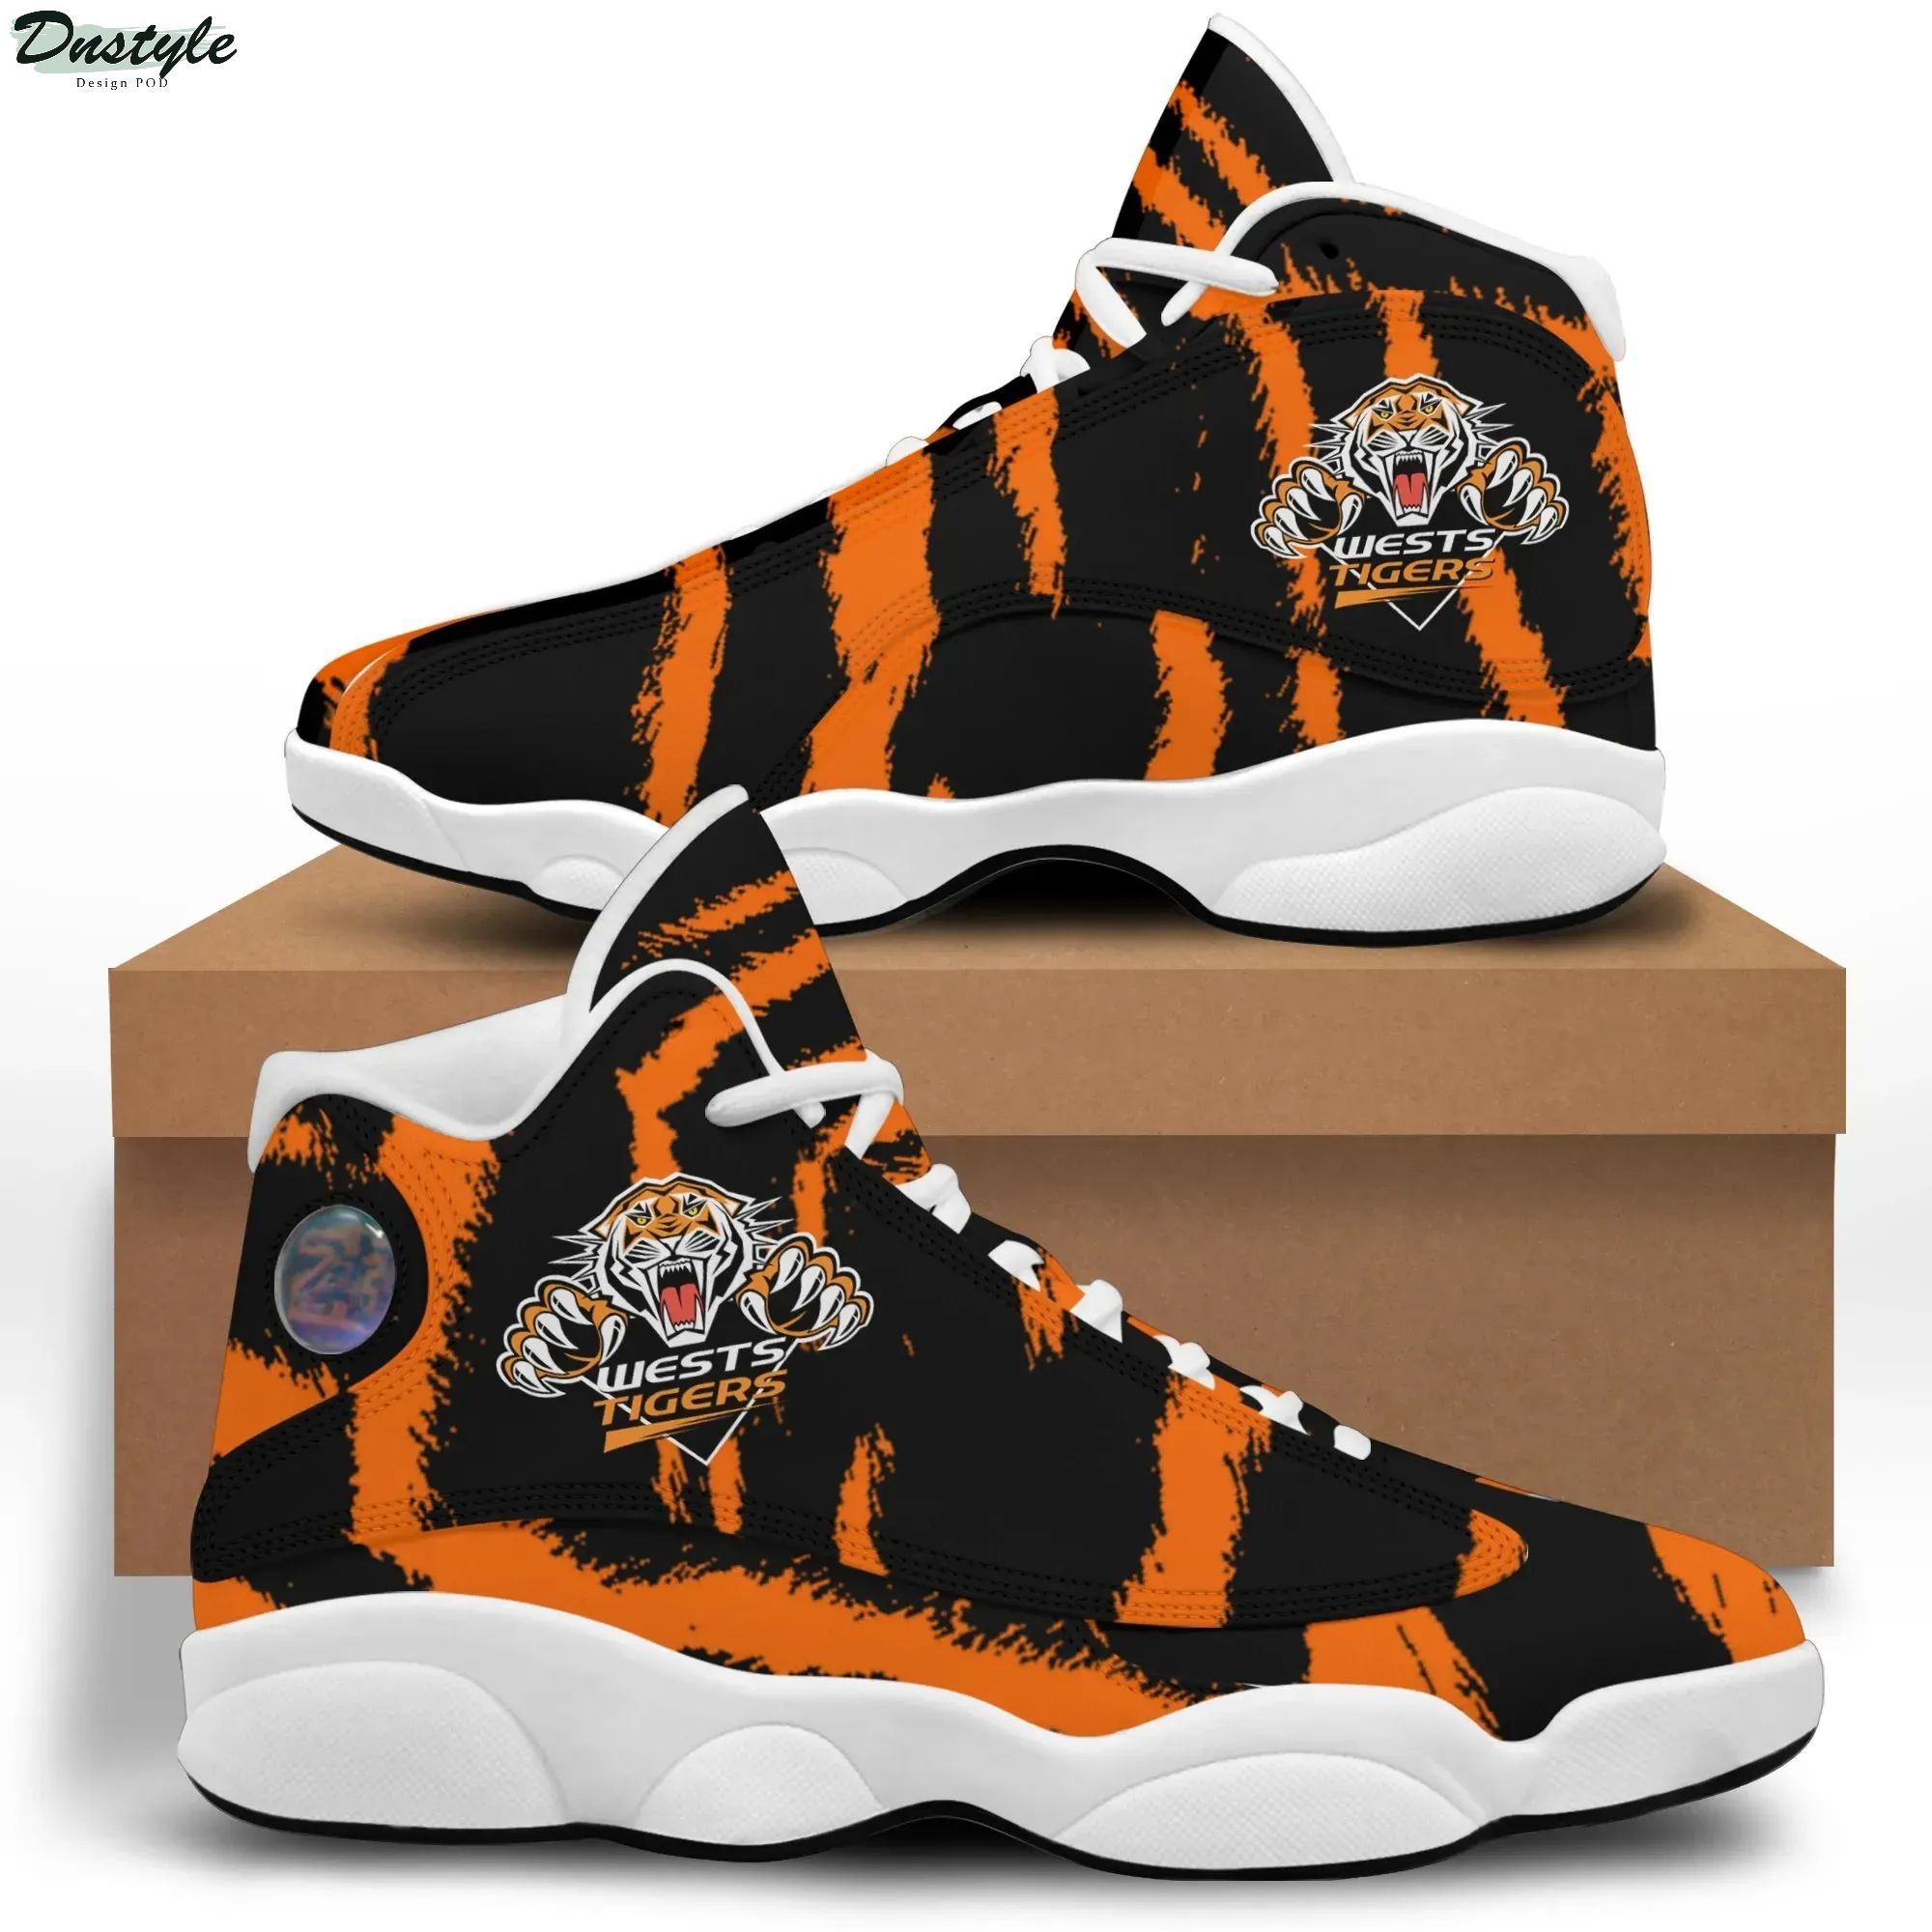 NRL Wests Tigers Air Jordan 13 Sneakers